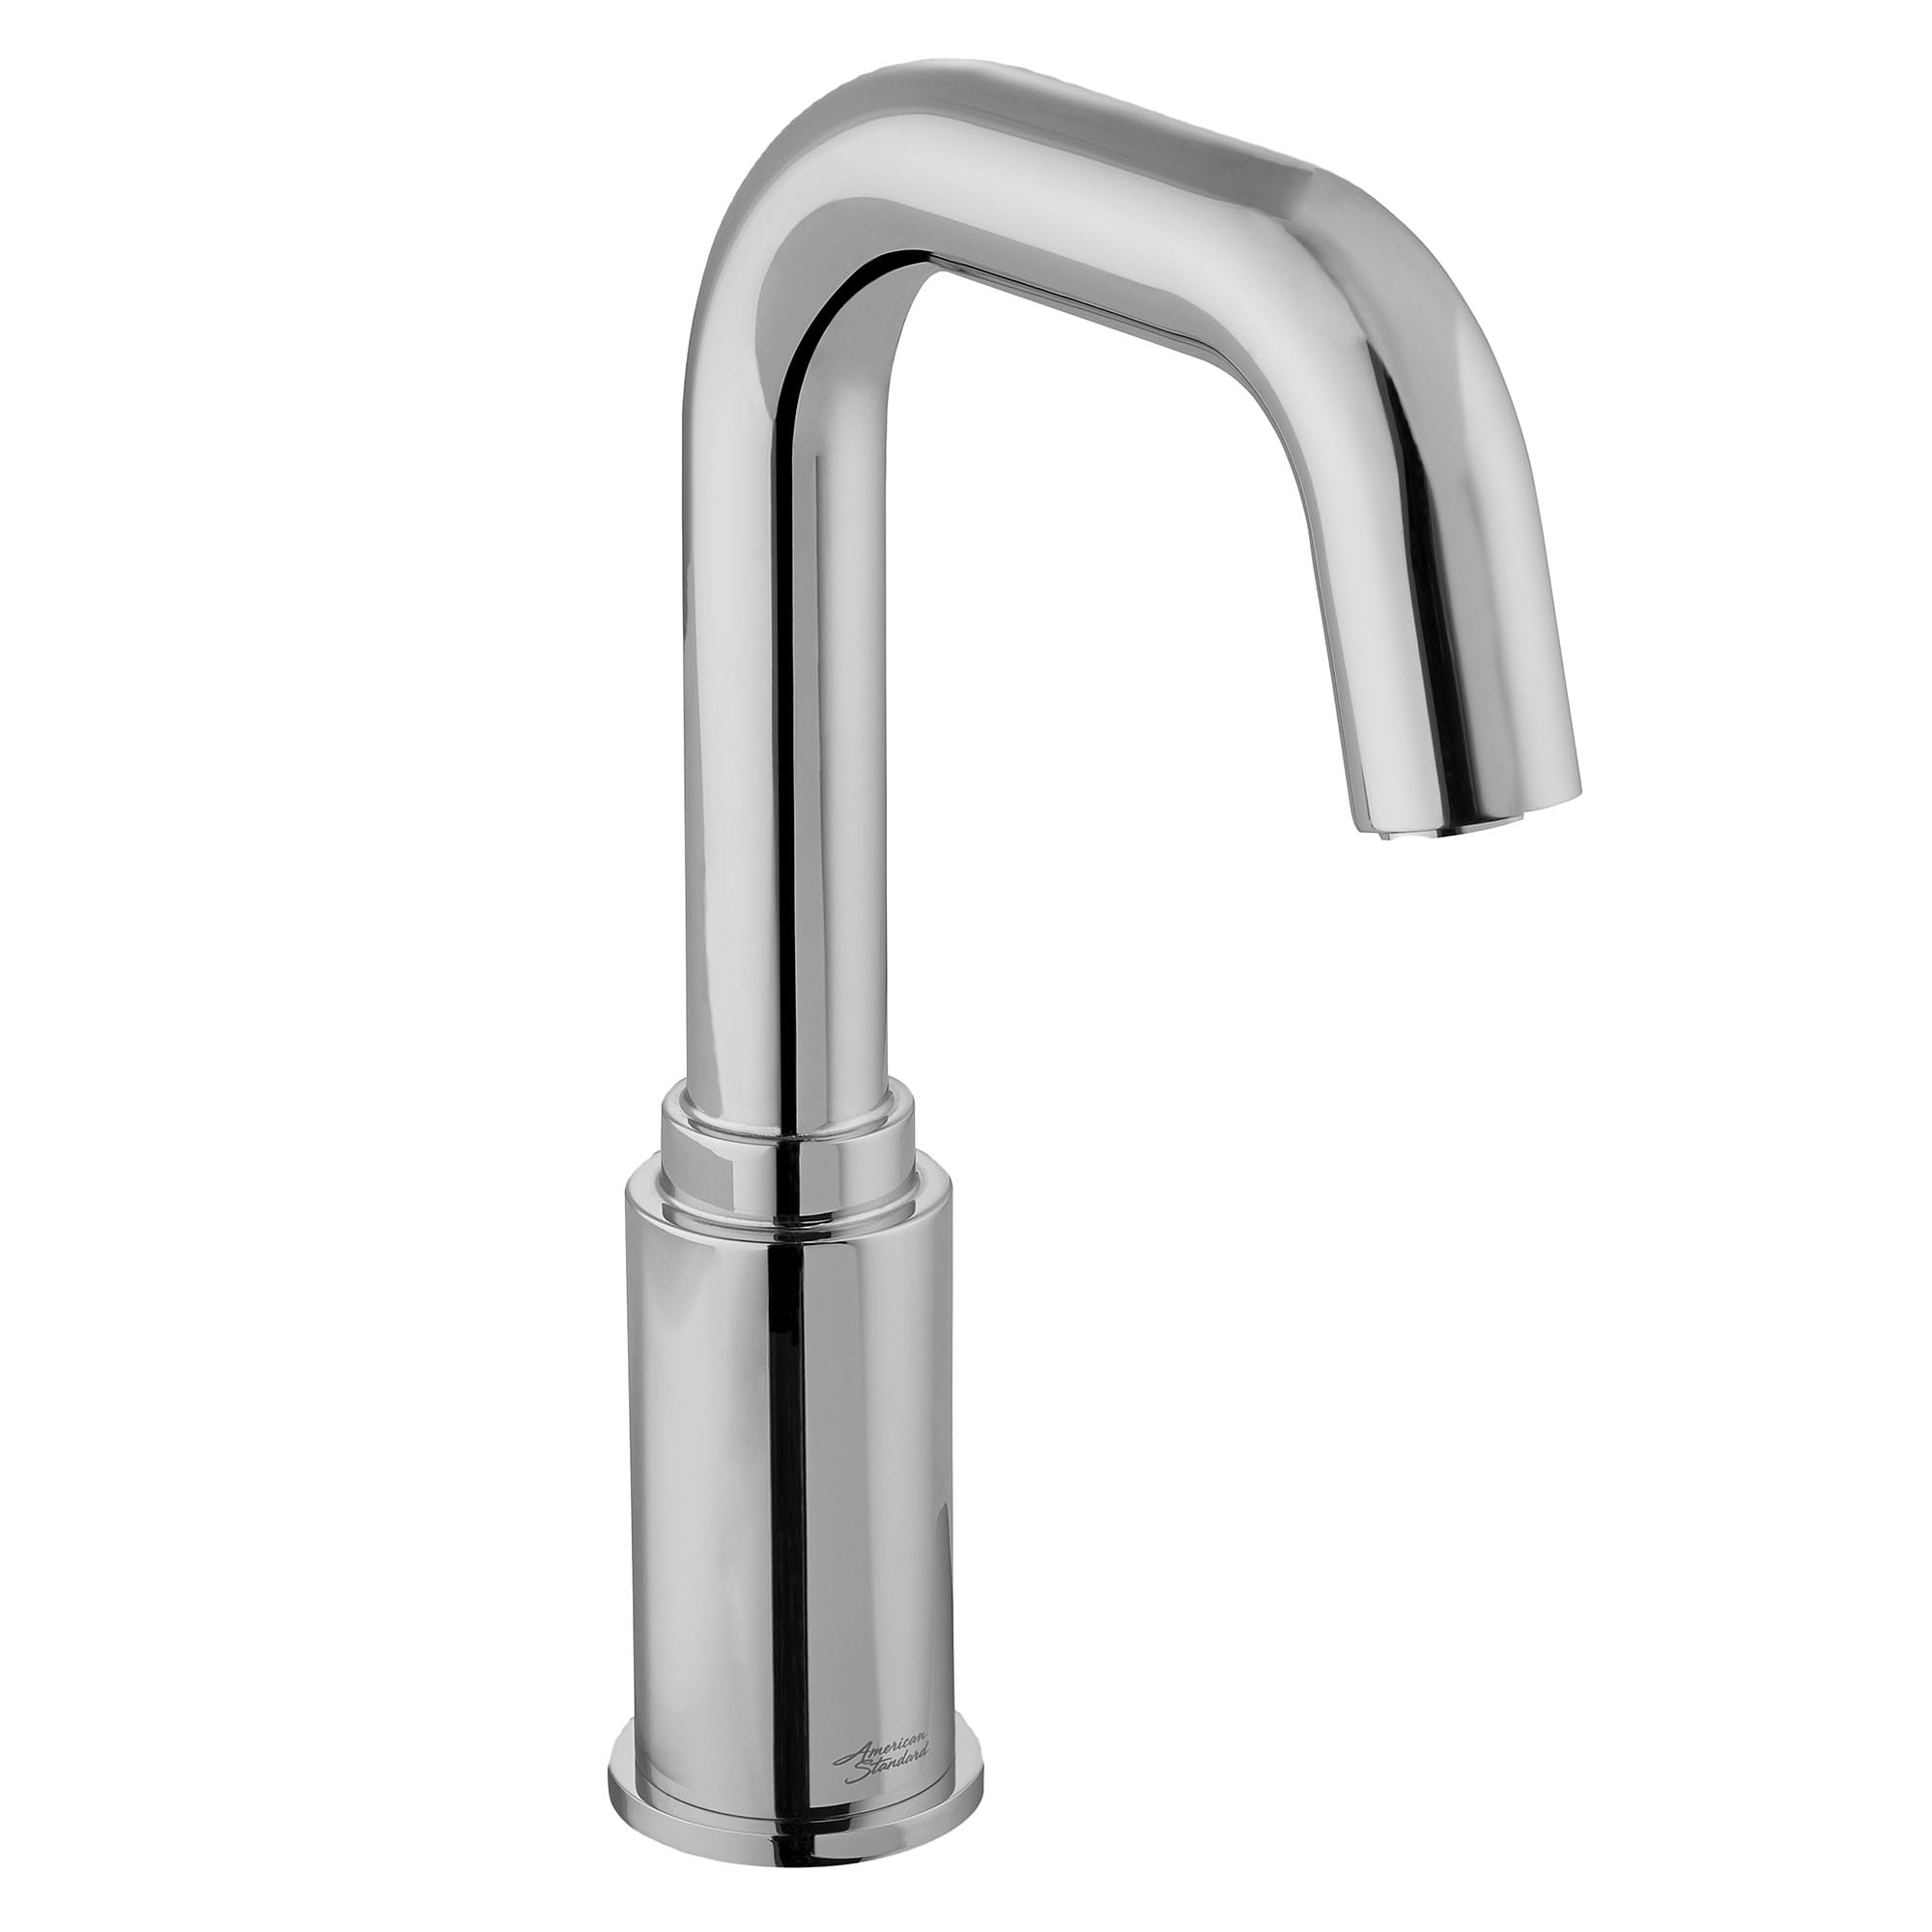 Serin - robinet sans contact, modèle de base, 0,5 gpm/1,9 lpm